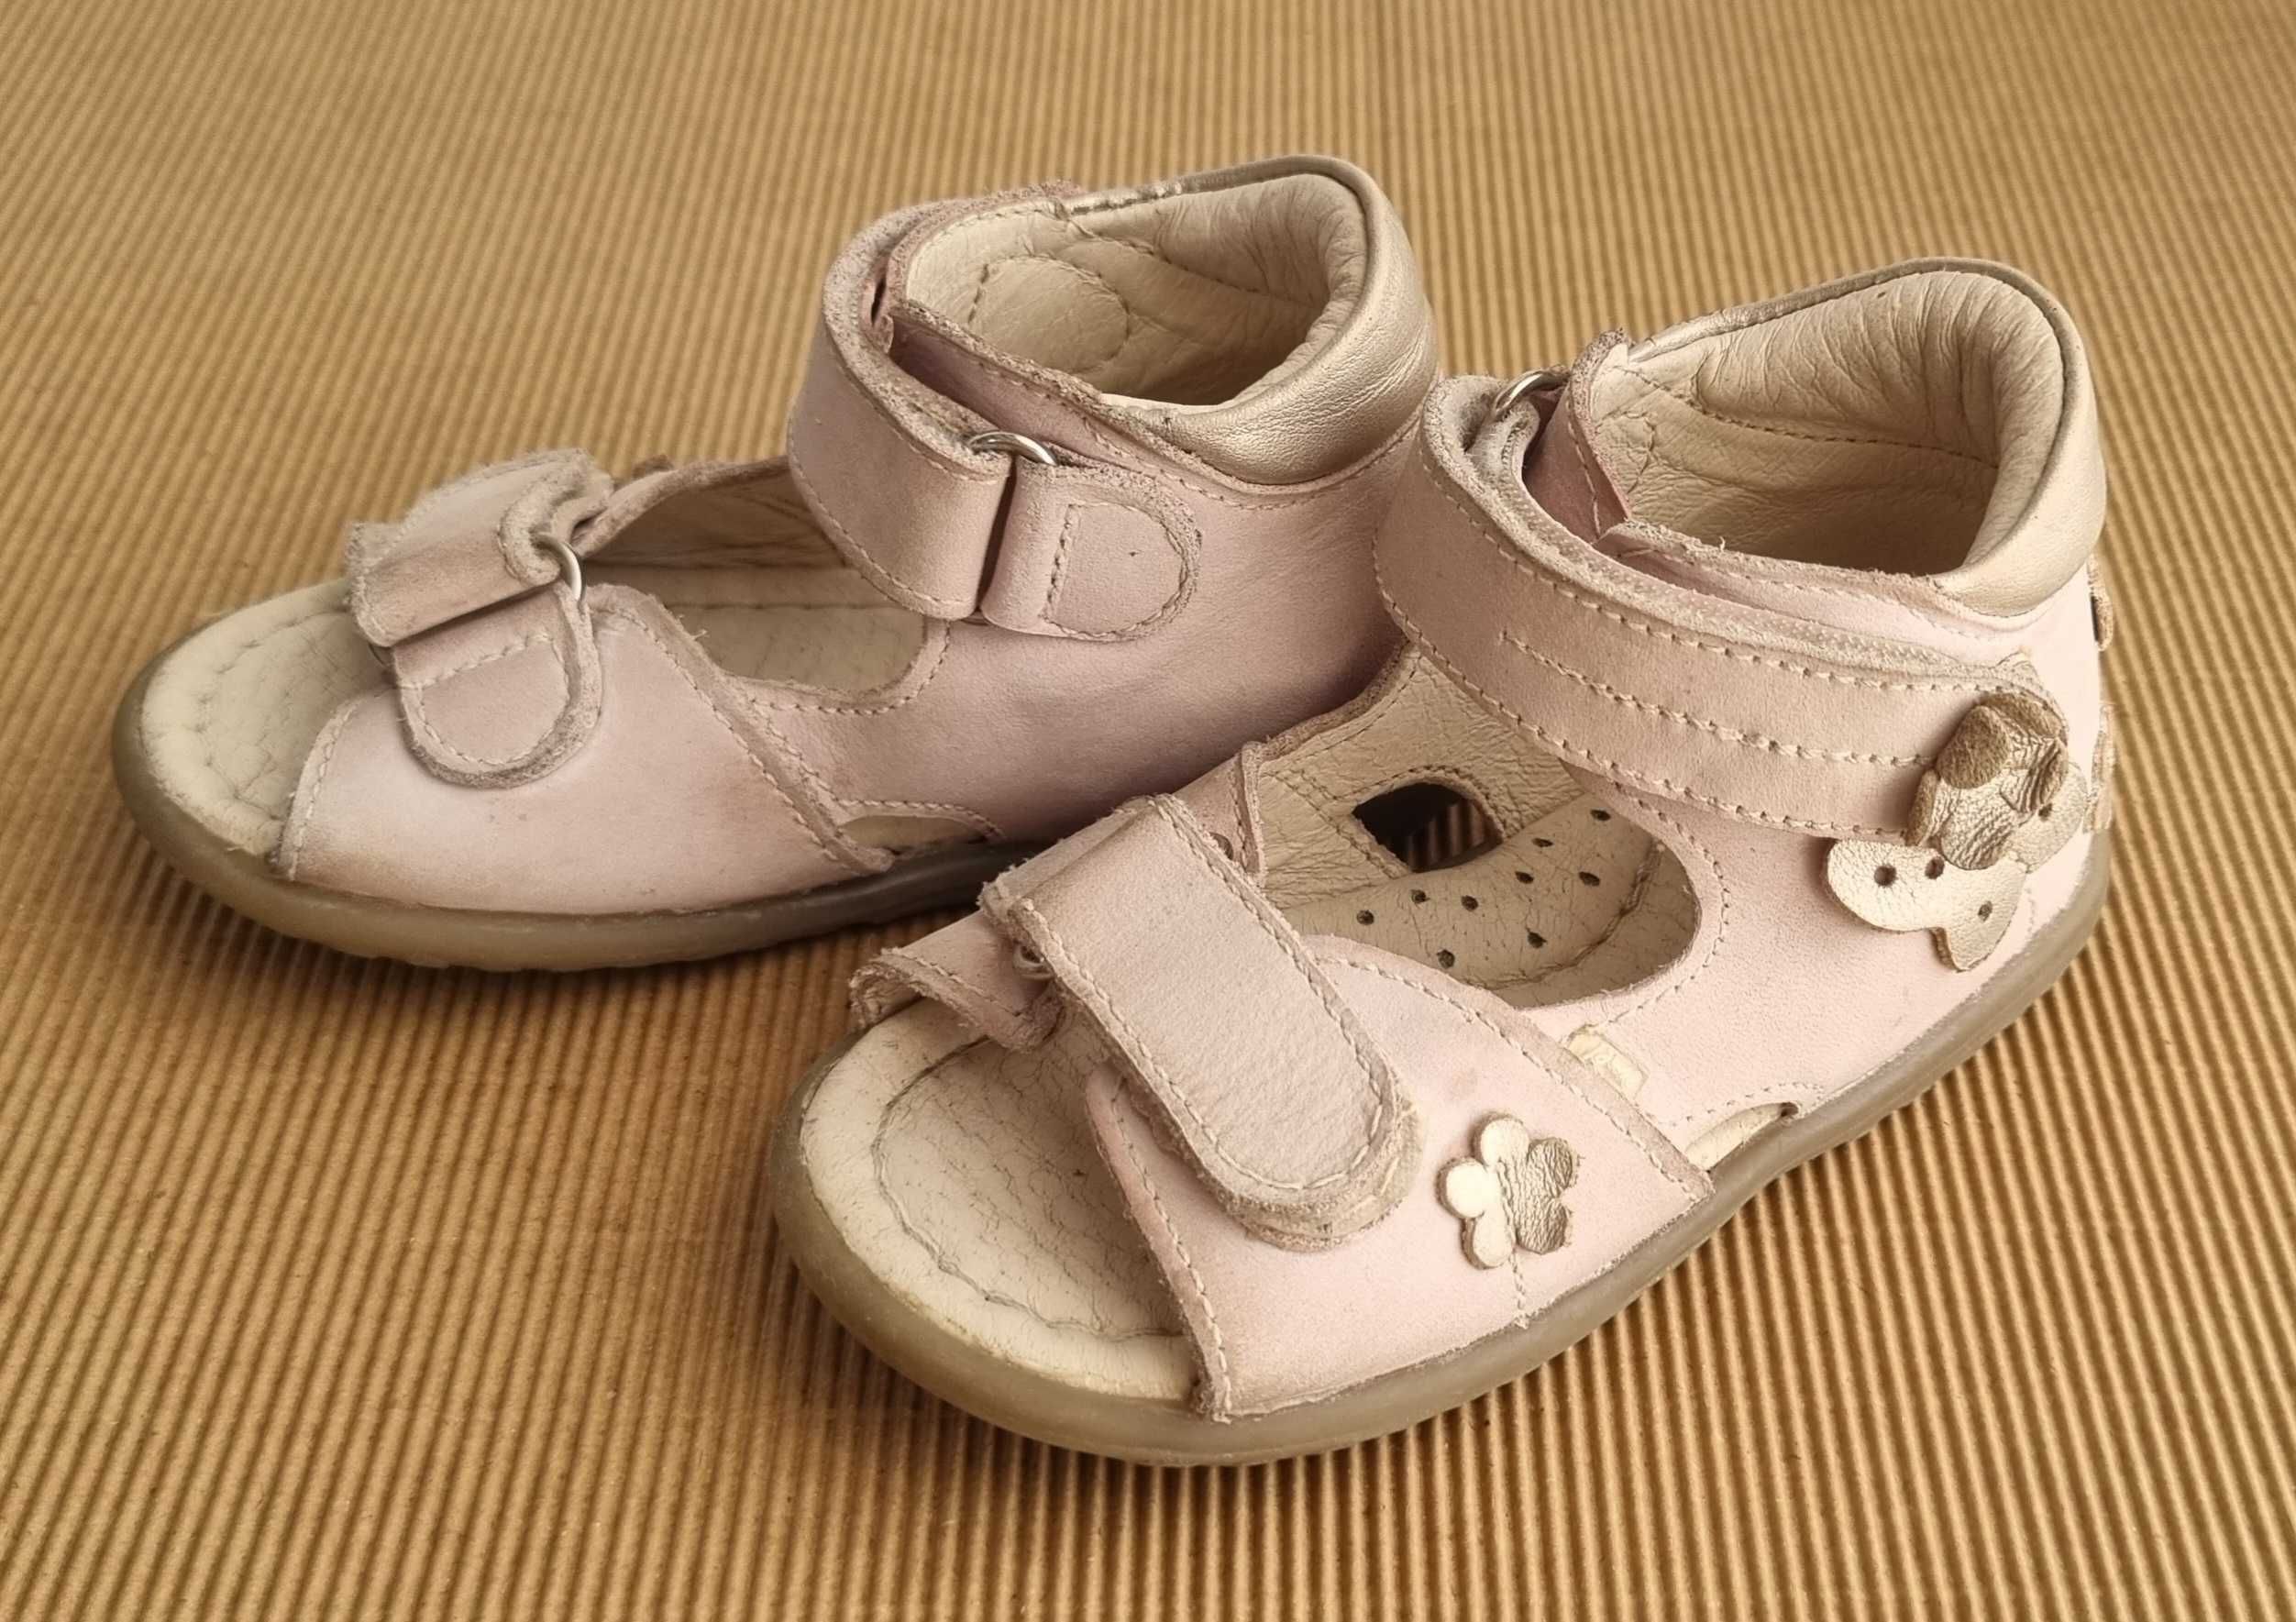 Buty buciki sandały skórzane roczki dla dziewczynki r. 21 EMEL